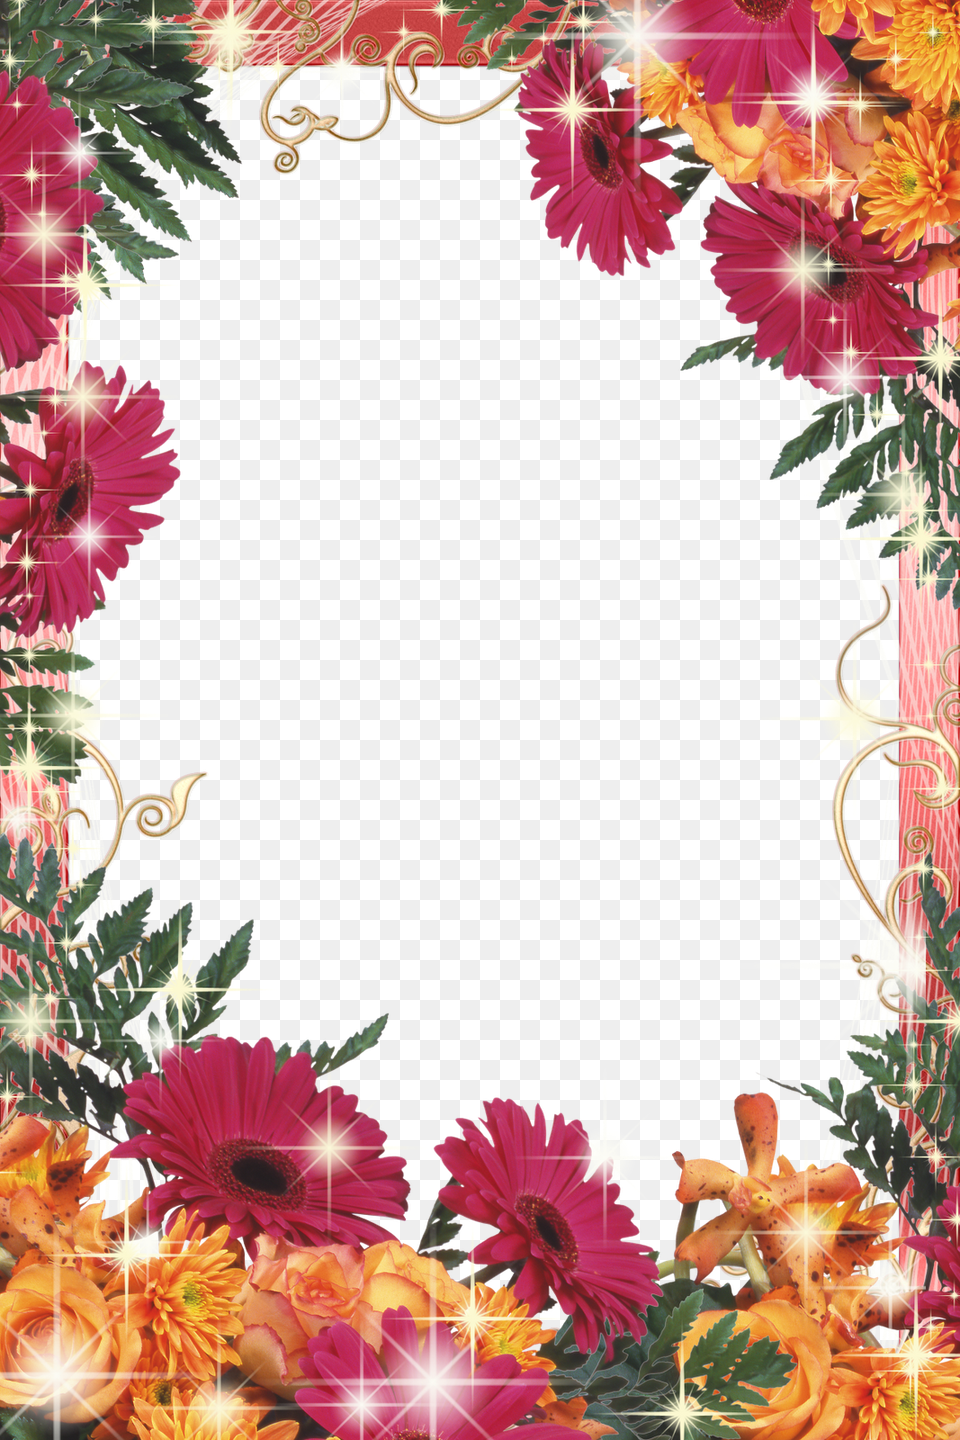 Frames Em Alta E Fundo Transparente Frames Flowers Designs, Art, Floral Design, Graphics, Pattern Free Png Download